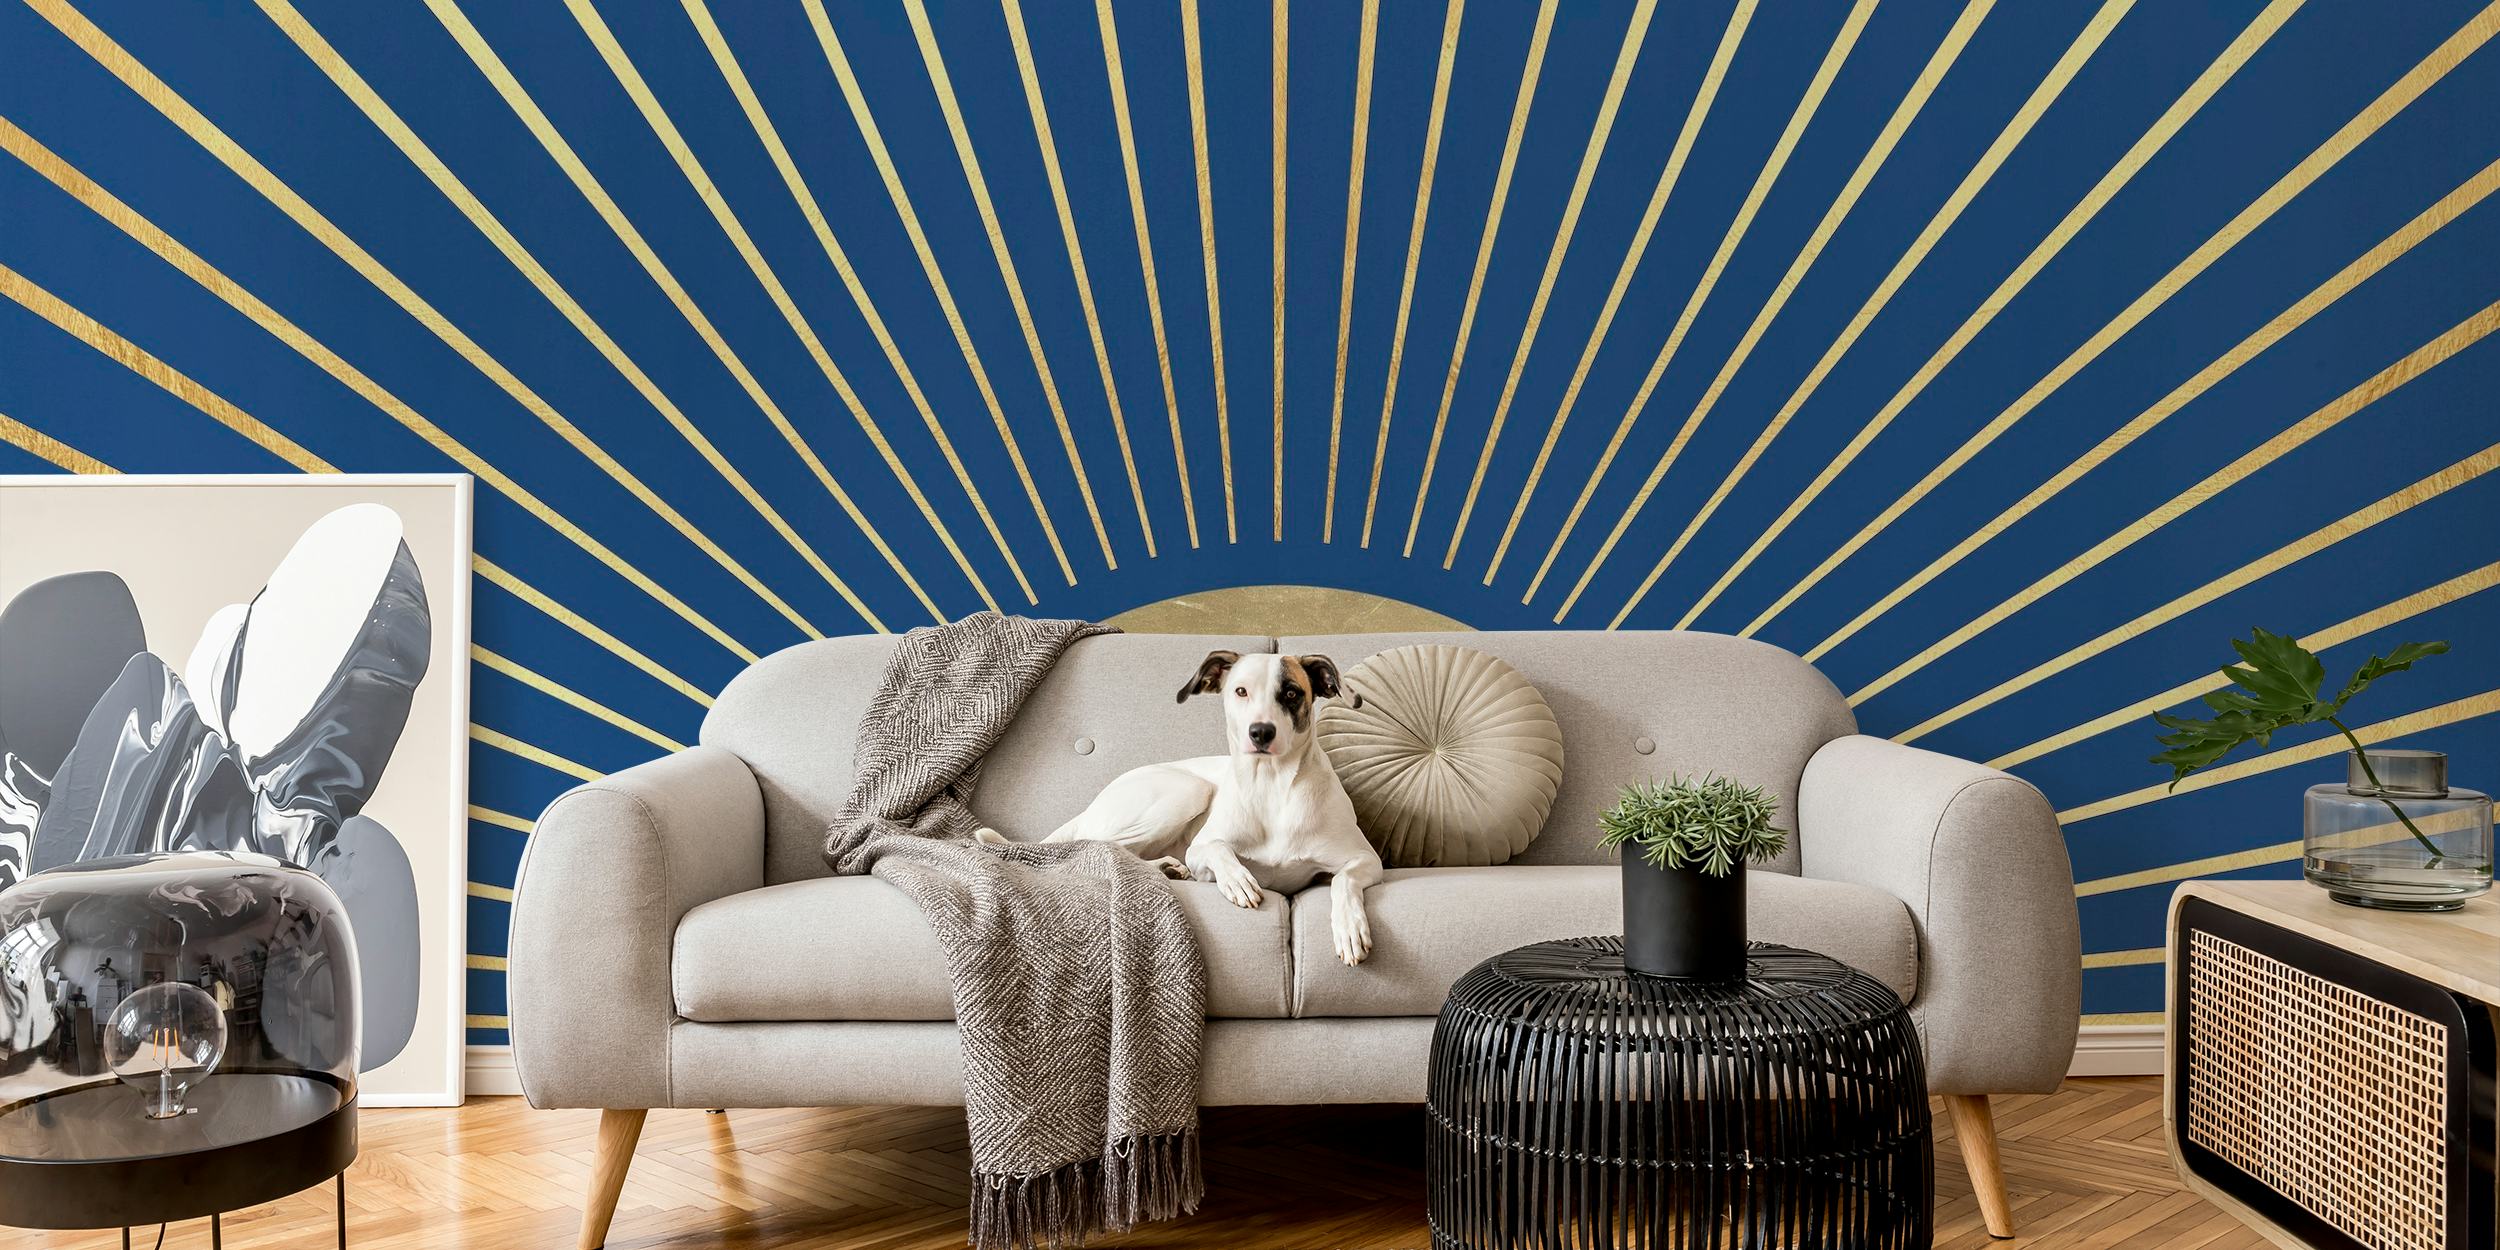 Kunstnerisk repræsentation af solstråler vægmaleri med radiale linjer på en dyb blå baggrund